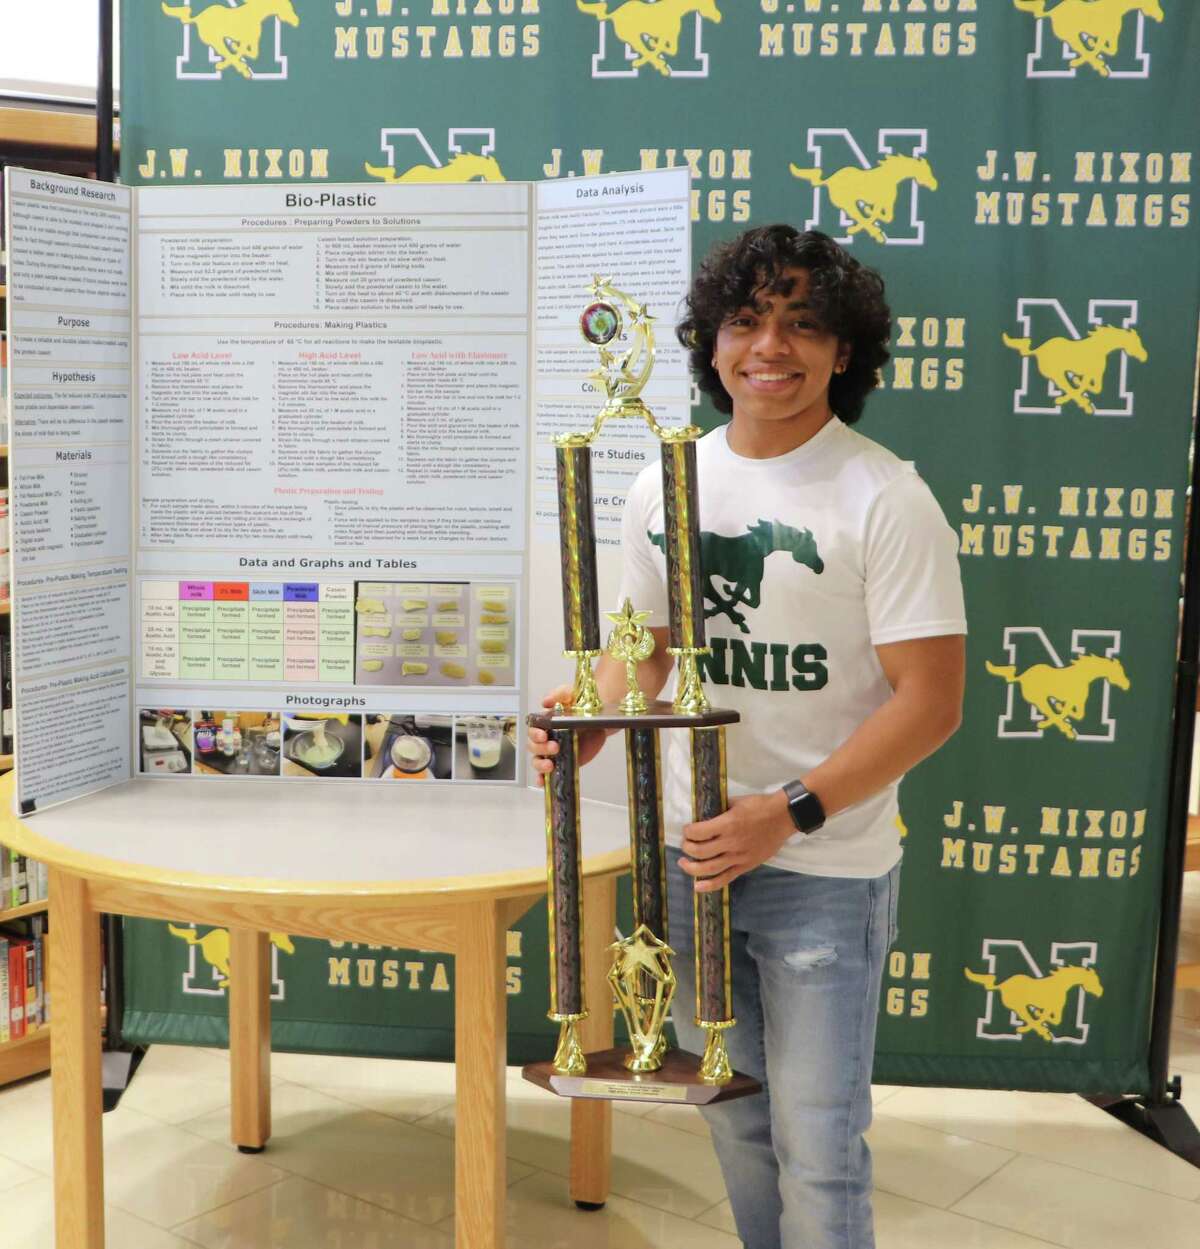 José Ávila es miembro del equipo de tenis de Nixon High School y de la Sociedad Nacional de Honor. Ávila tambien obtuvo el primer lugar en la Feria Secundaria de Ciencias y representará a LISD en Atlanta en la Feria de Ciencias Regeneron International Science Fair con su investigación acerca de bioplastico.